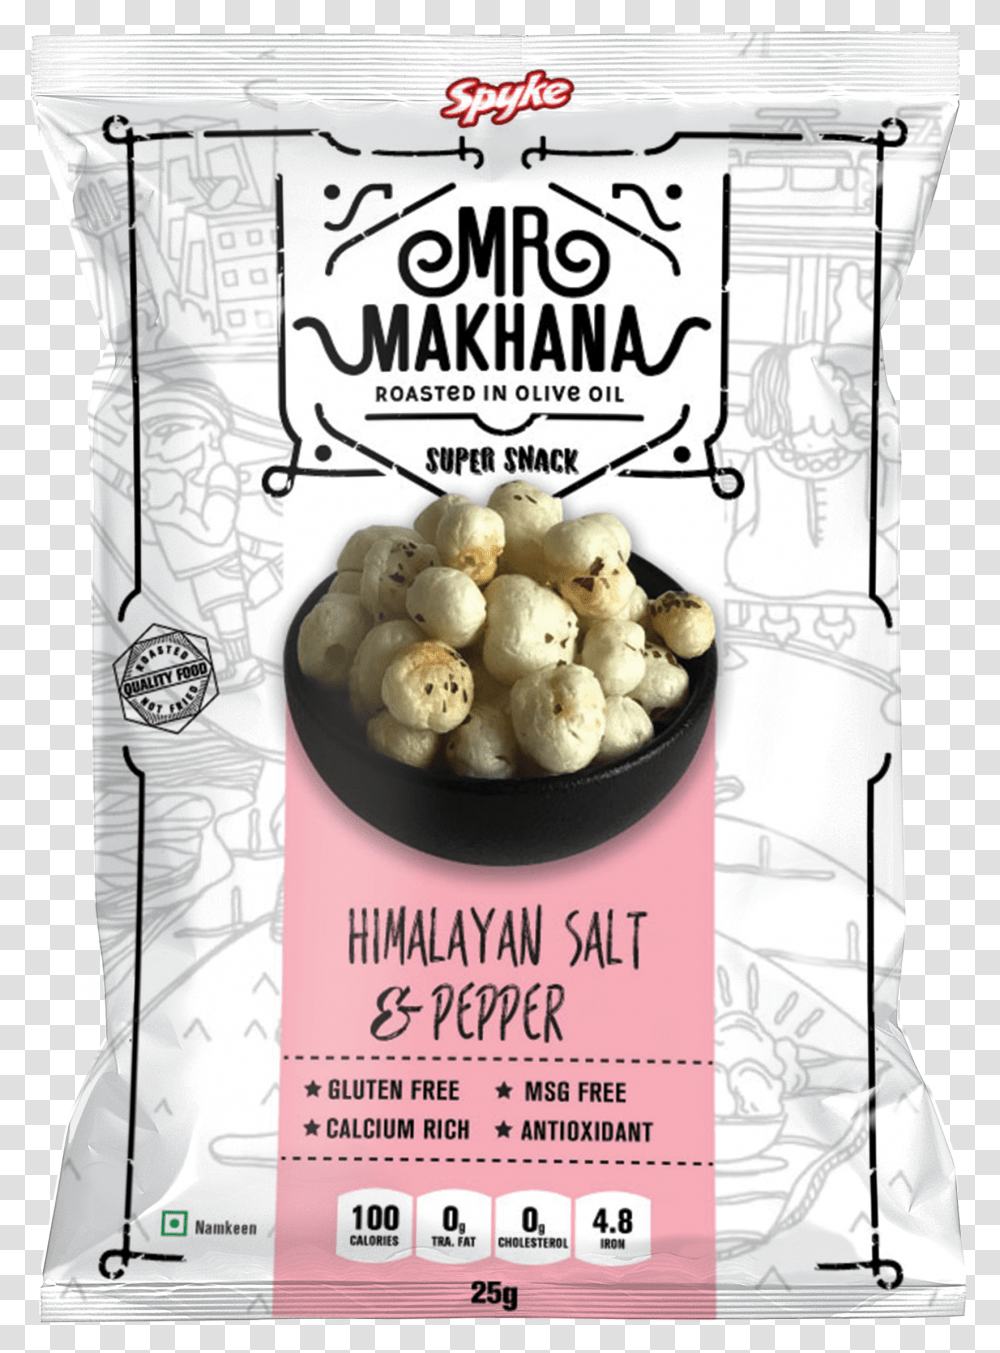 Makhana Mocks Himalayan Salt And Pepper Mr Makhana Himalayan Salt Amp Pepper, Poster, Advertisement, Flyer, Paper Transparent Png